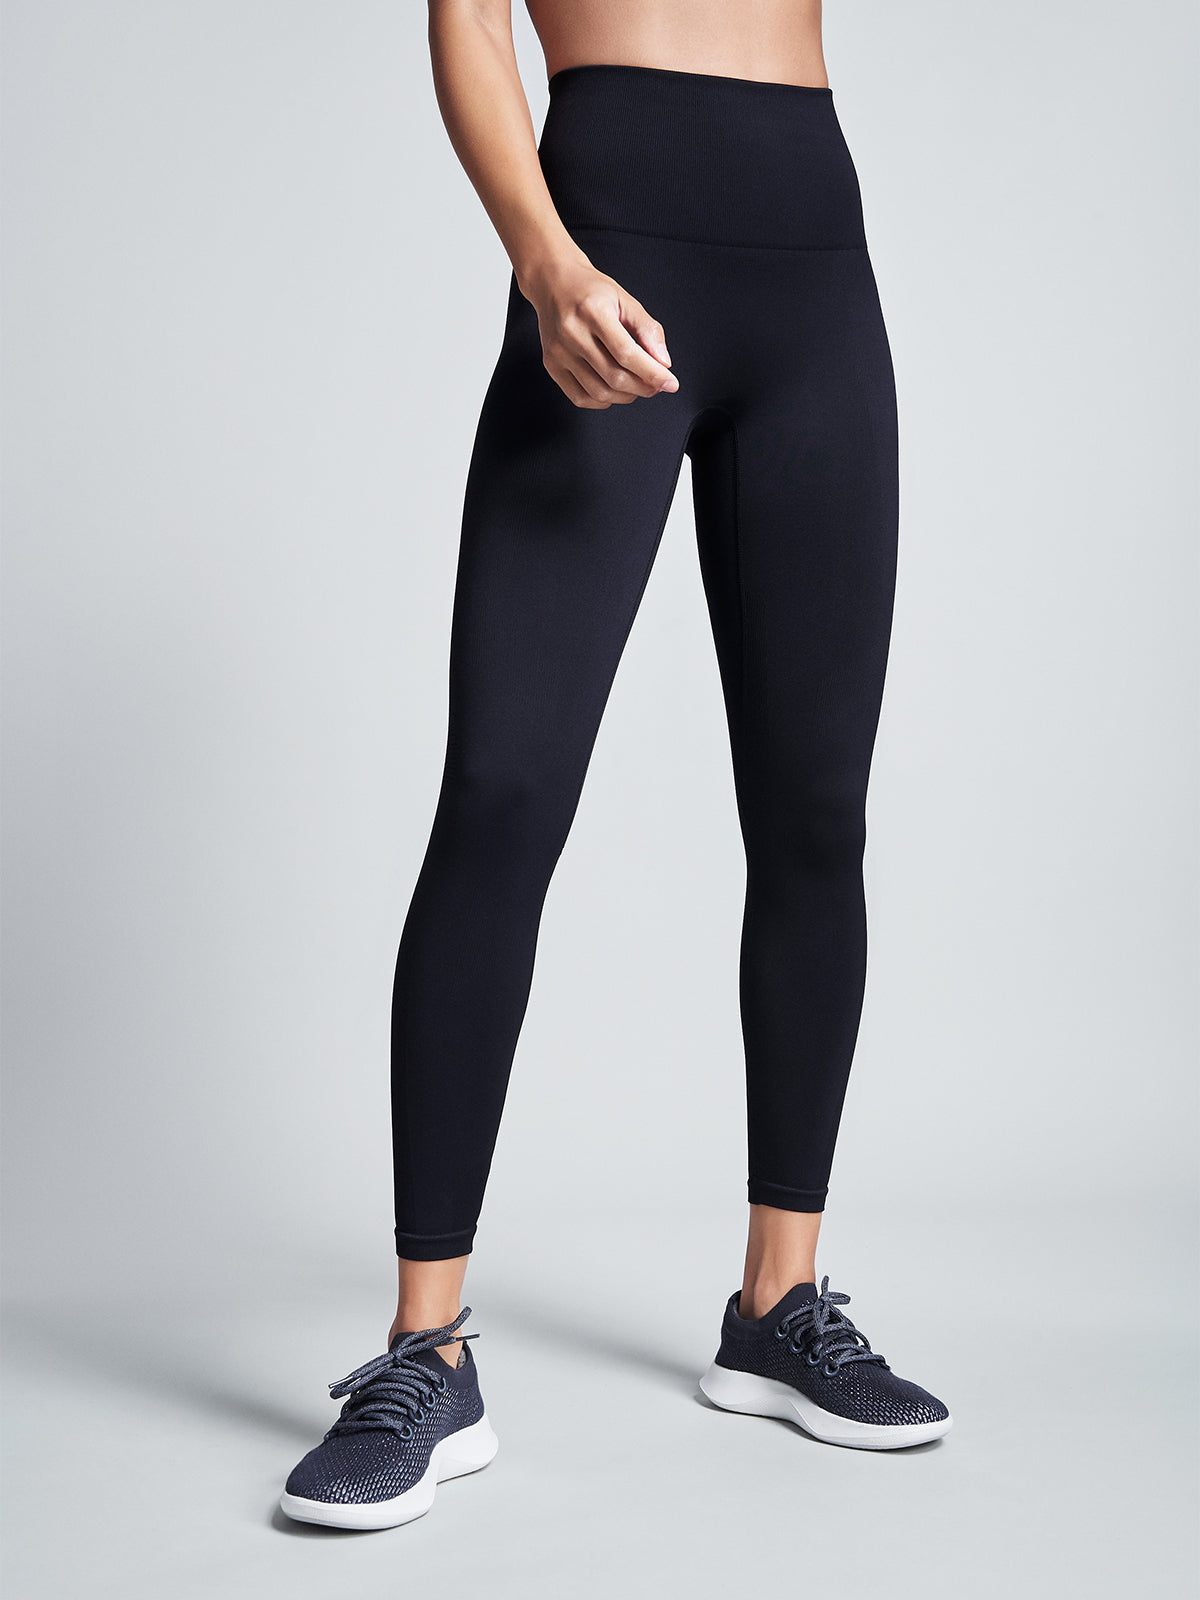 Buy Nike Women's One High-Waisted 7/8 Leggings Black in Dubai, UAE -SSS